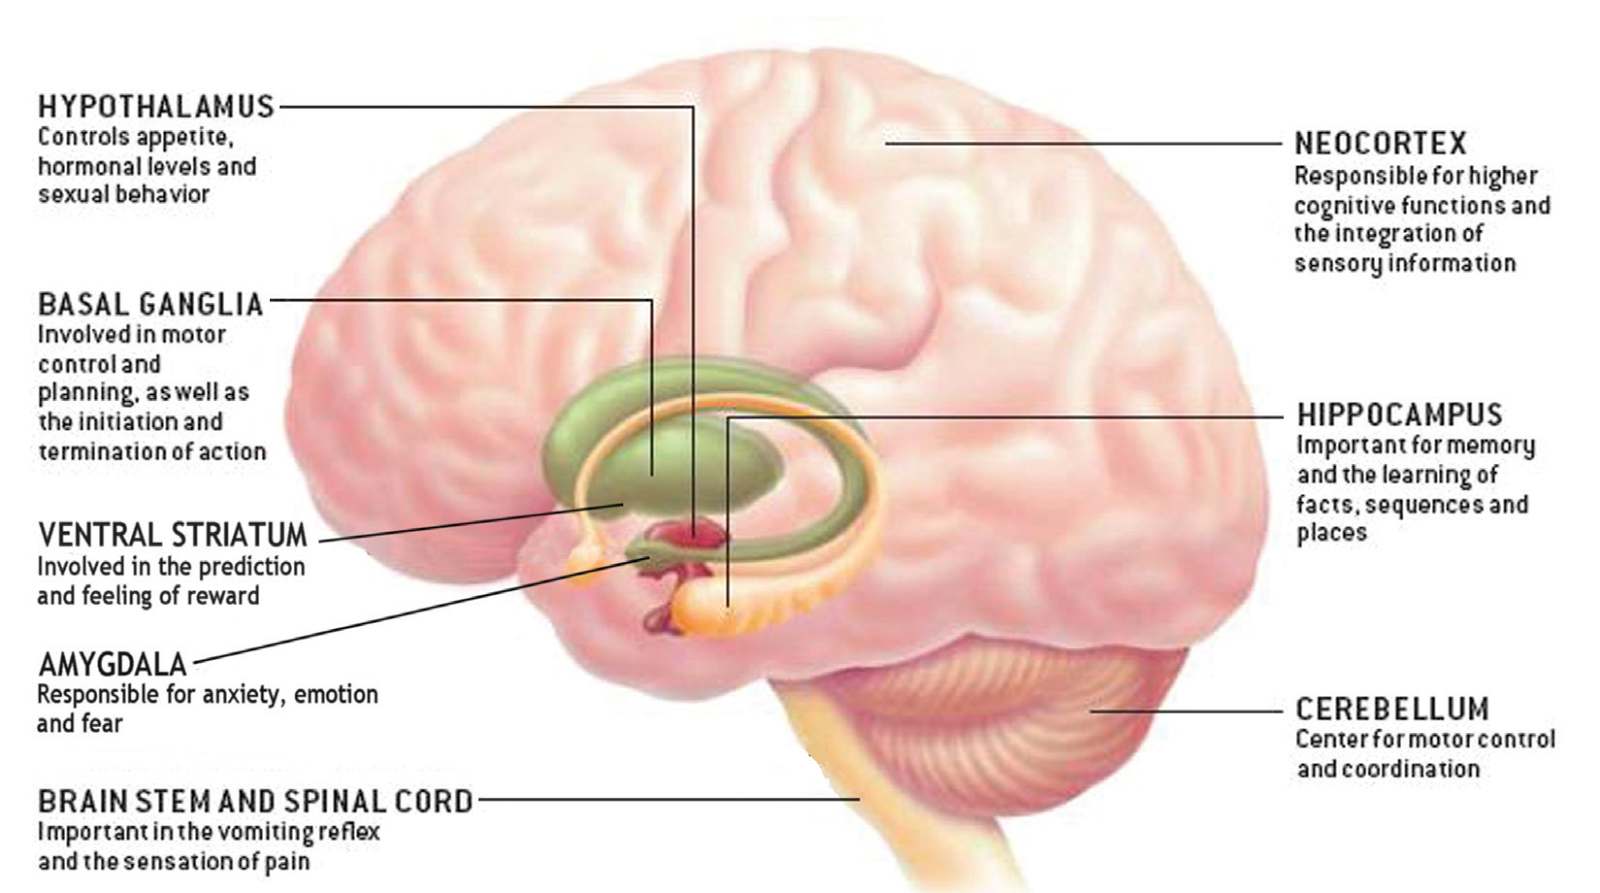 Efectos de la cetosi en el cerebro